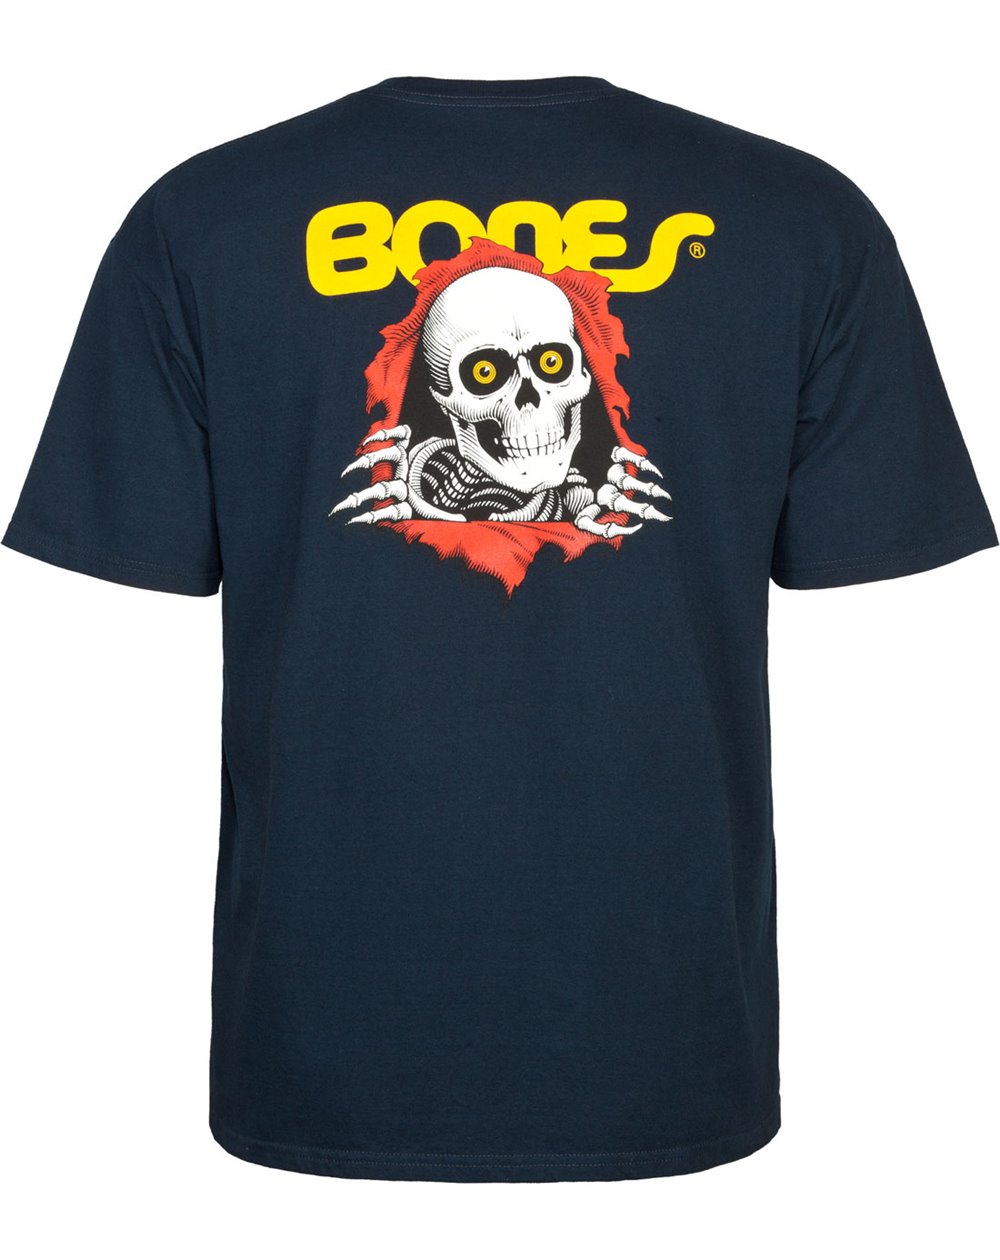 Powell Peralta T-Shirt Homme Ripper (Navy)